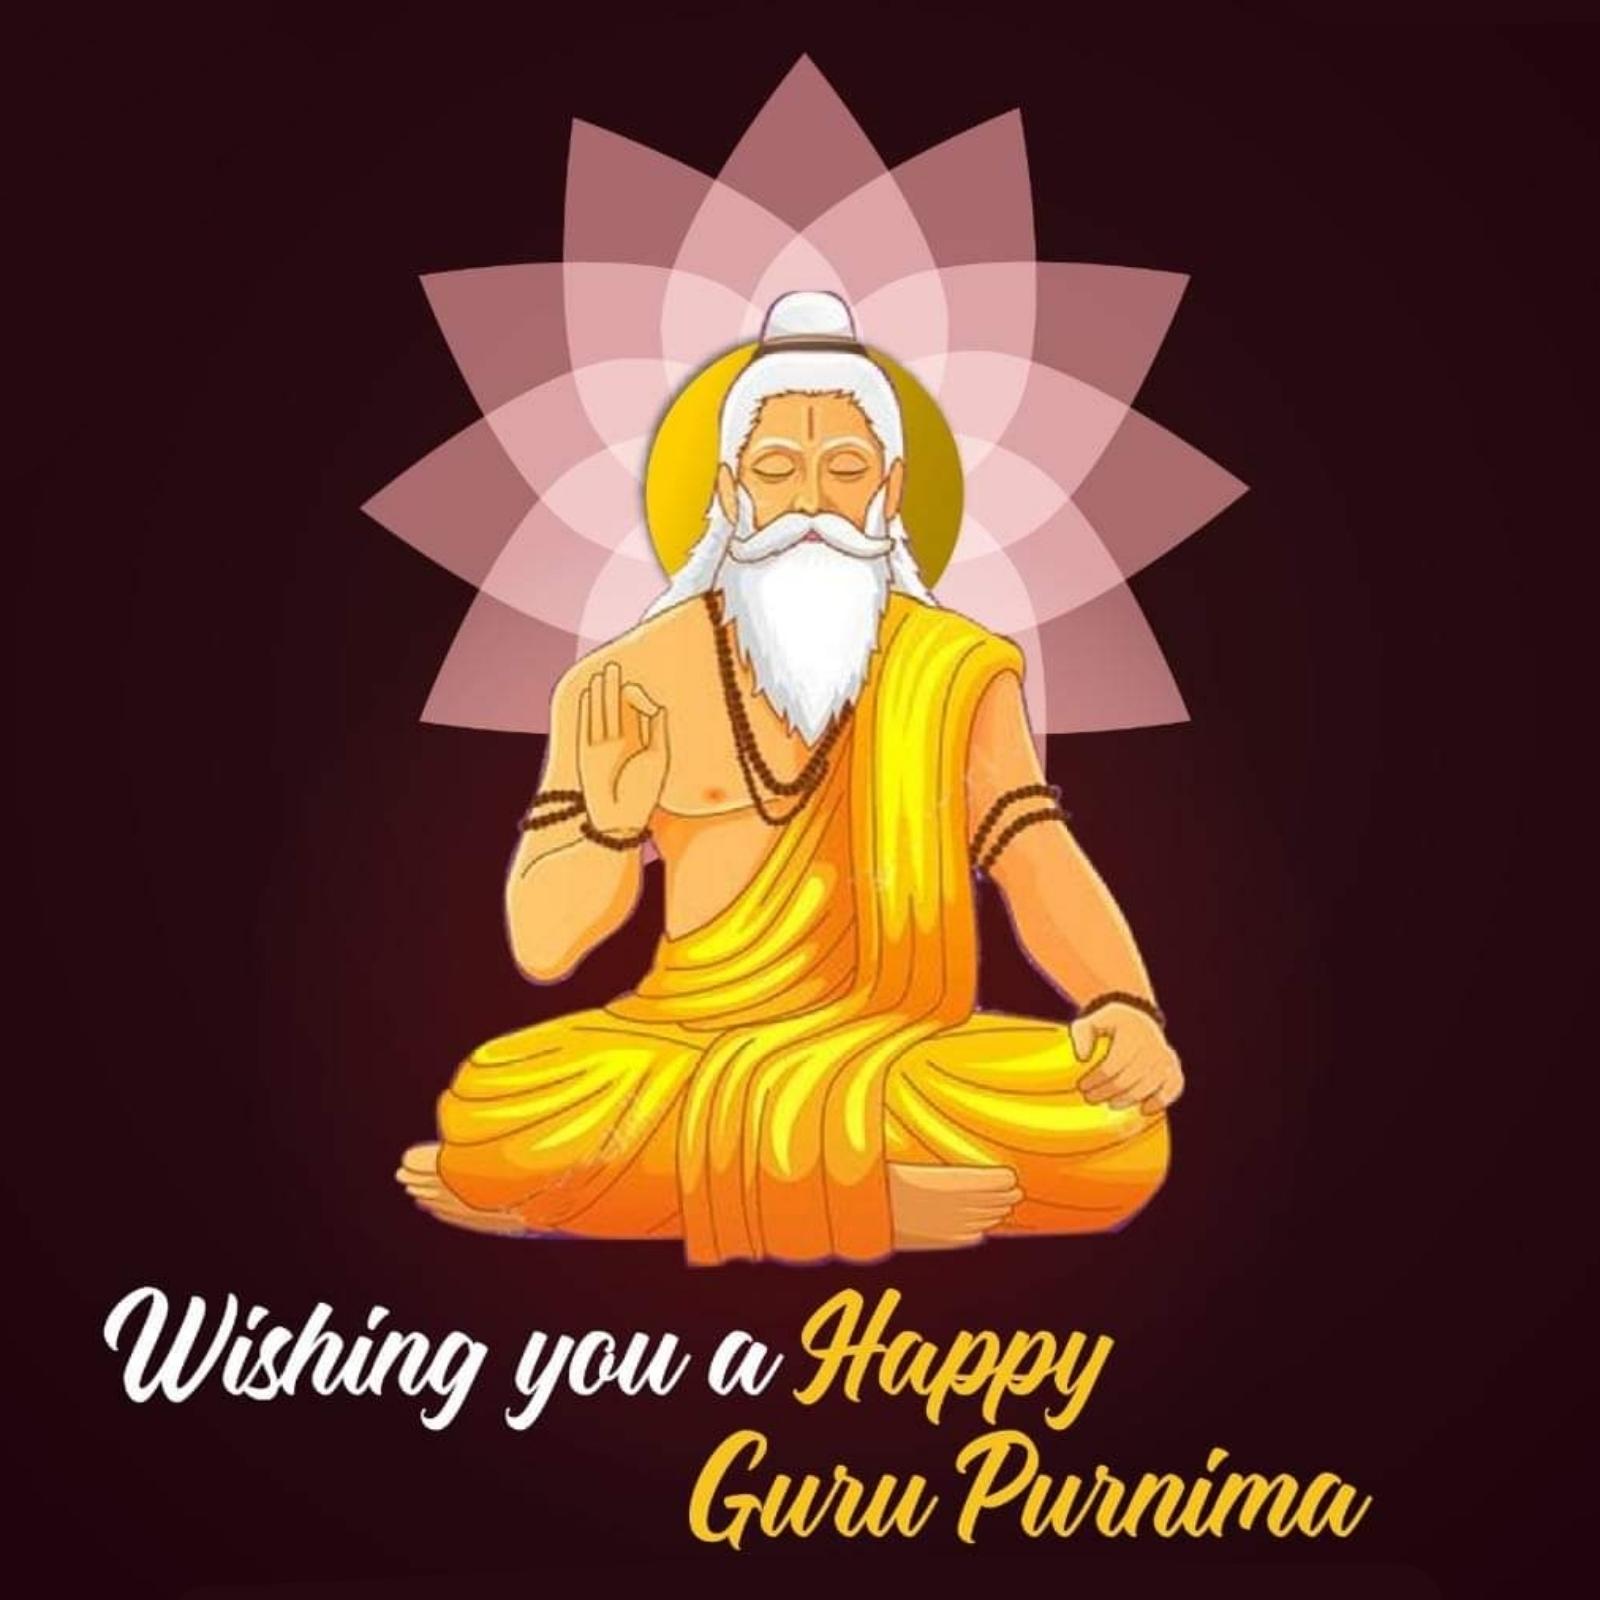 Happy Guru Purnima Wishes Images